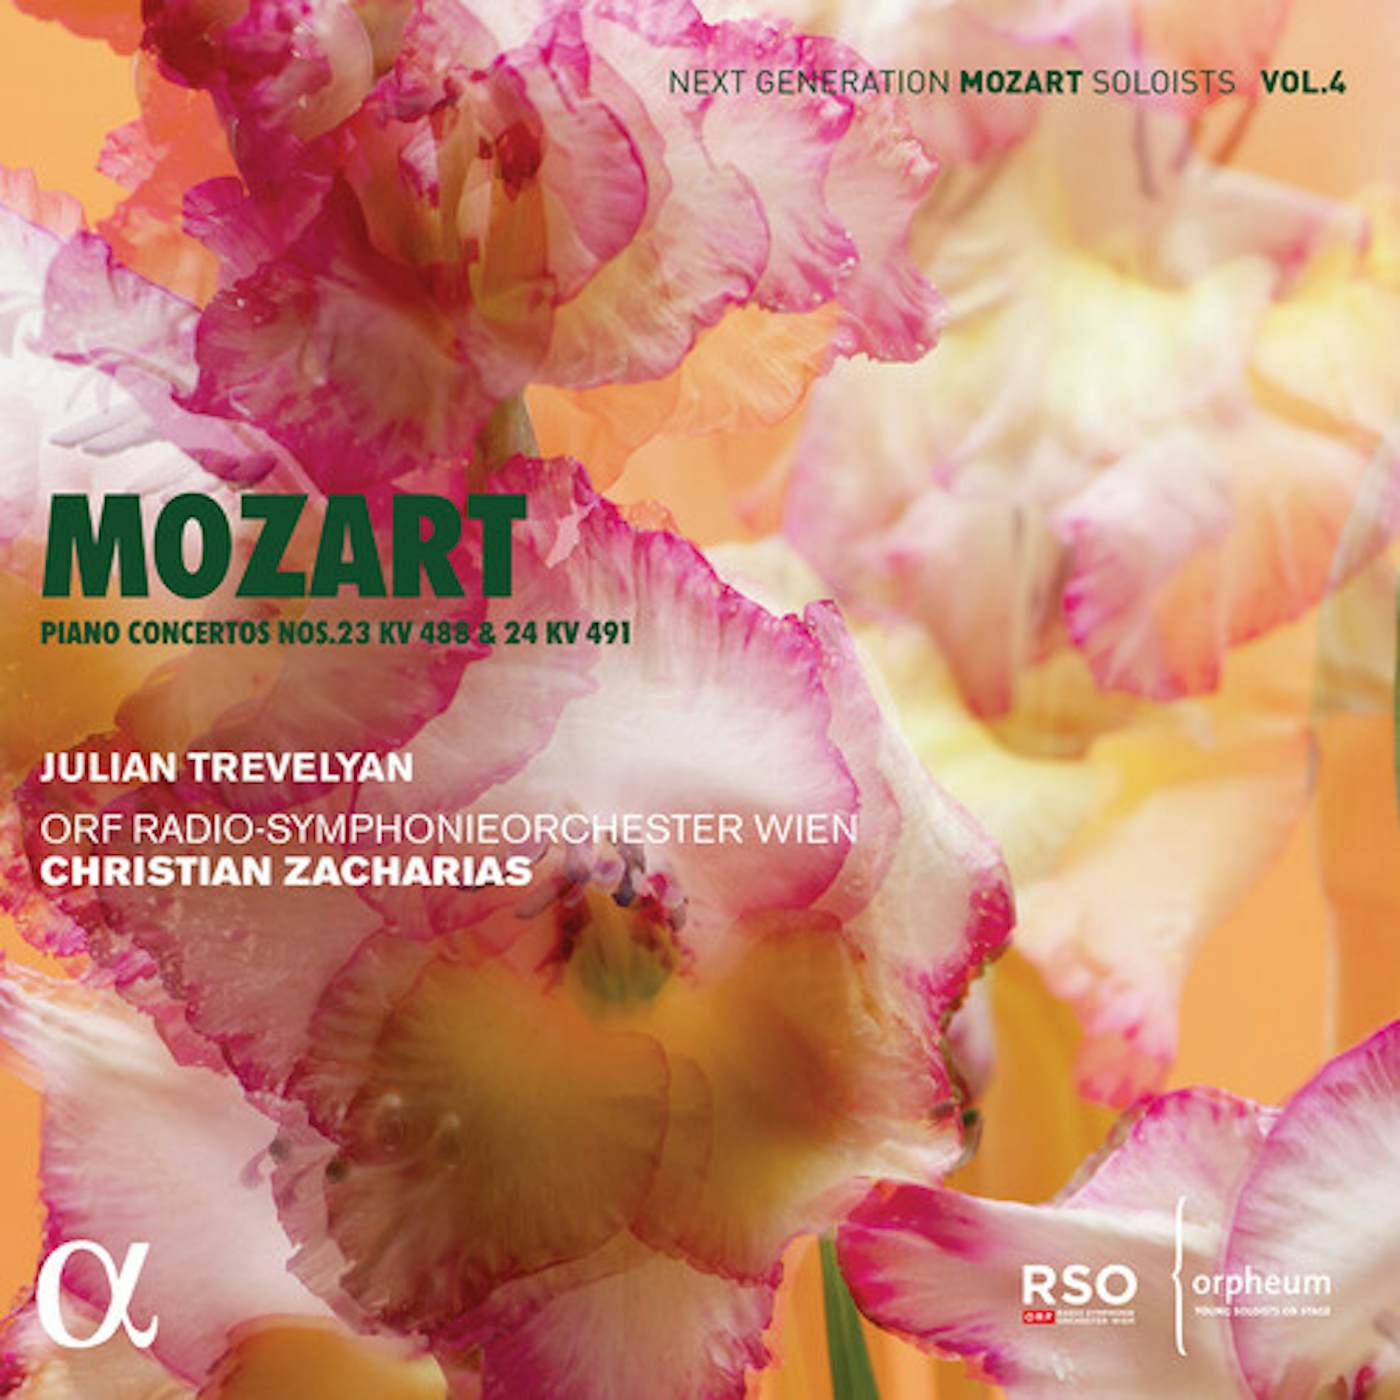 Mozart / ORF Radio-Symphonieorchester Wien PIANO CONCERTOS NOS. 23 KV 488 & 24 KV 491 CD